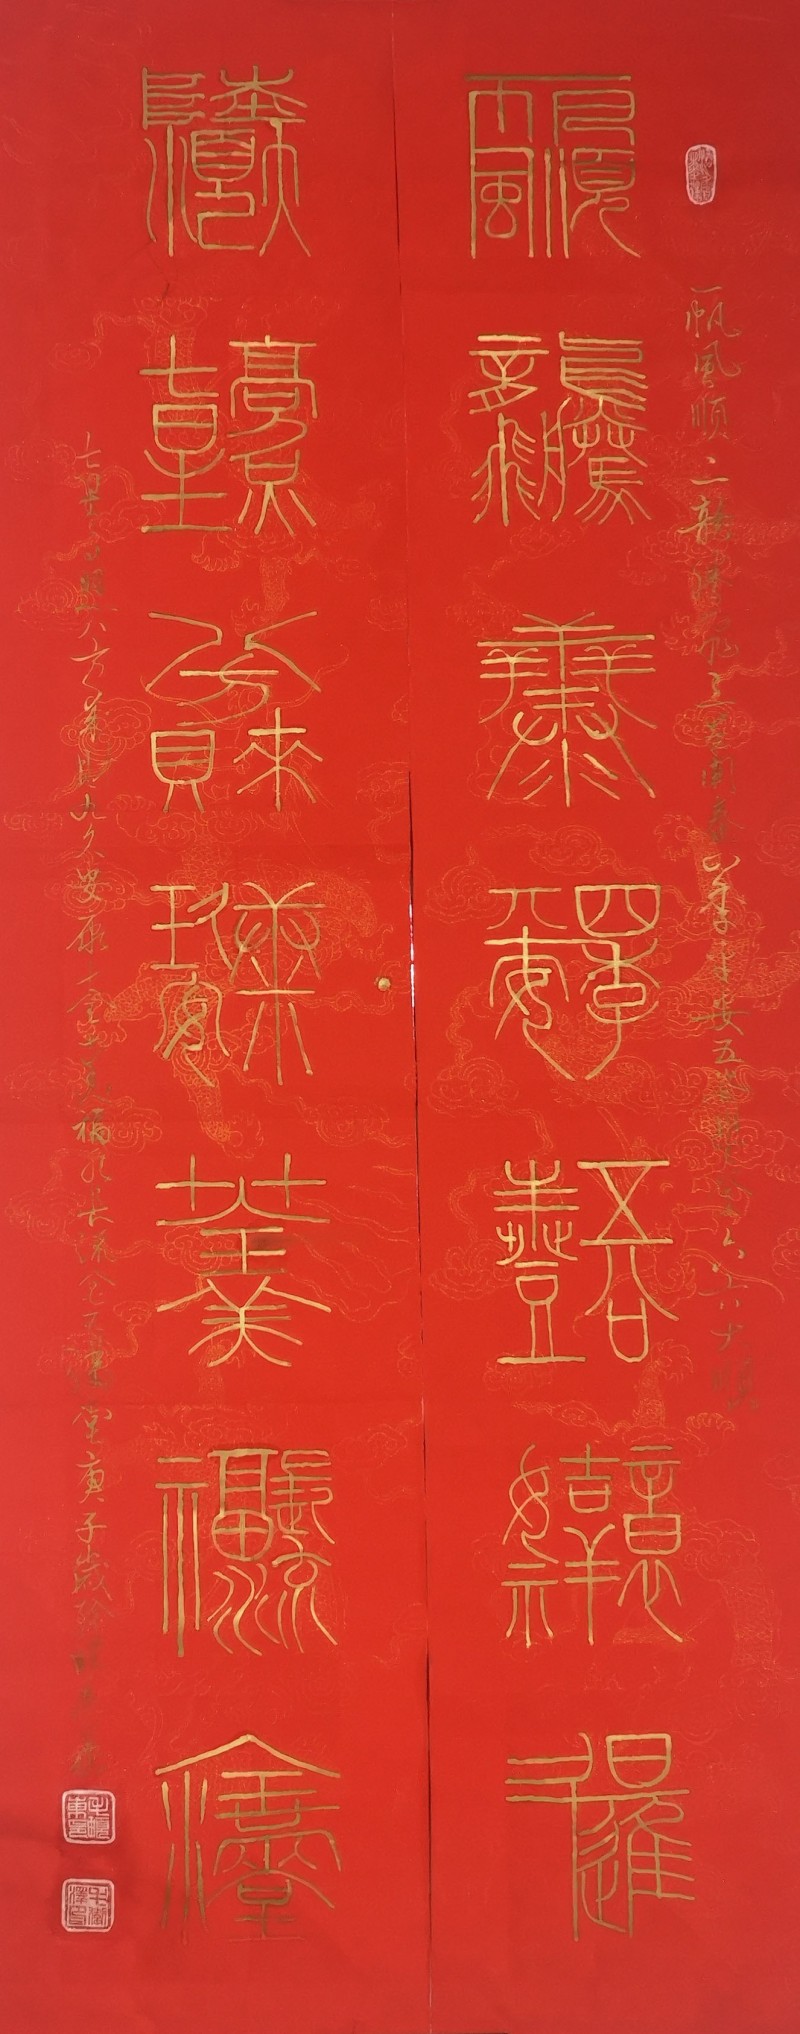 中国楹联学会中宣盛世文化艺术交流中心书画风采展示——毛卫泽